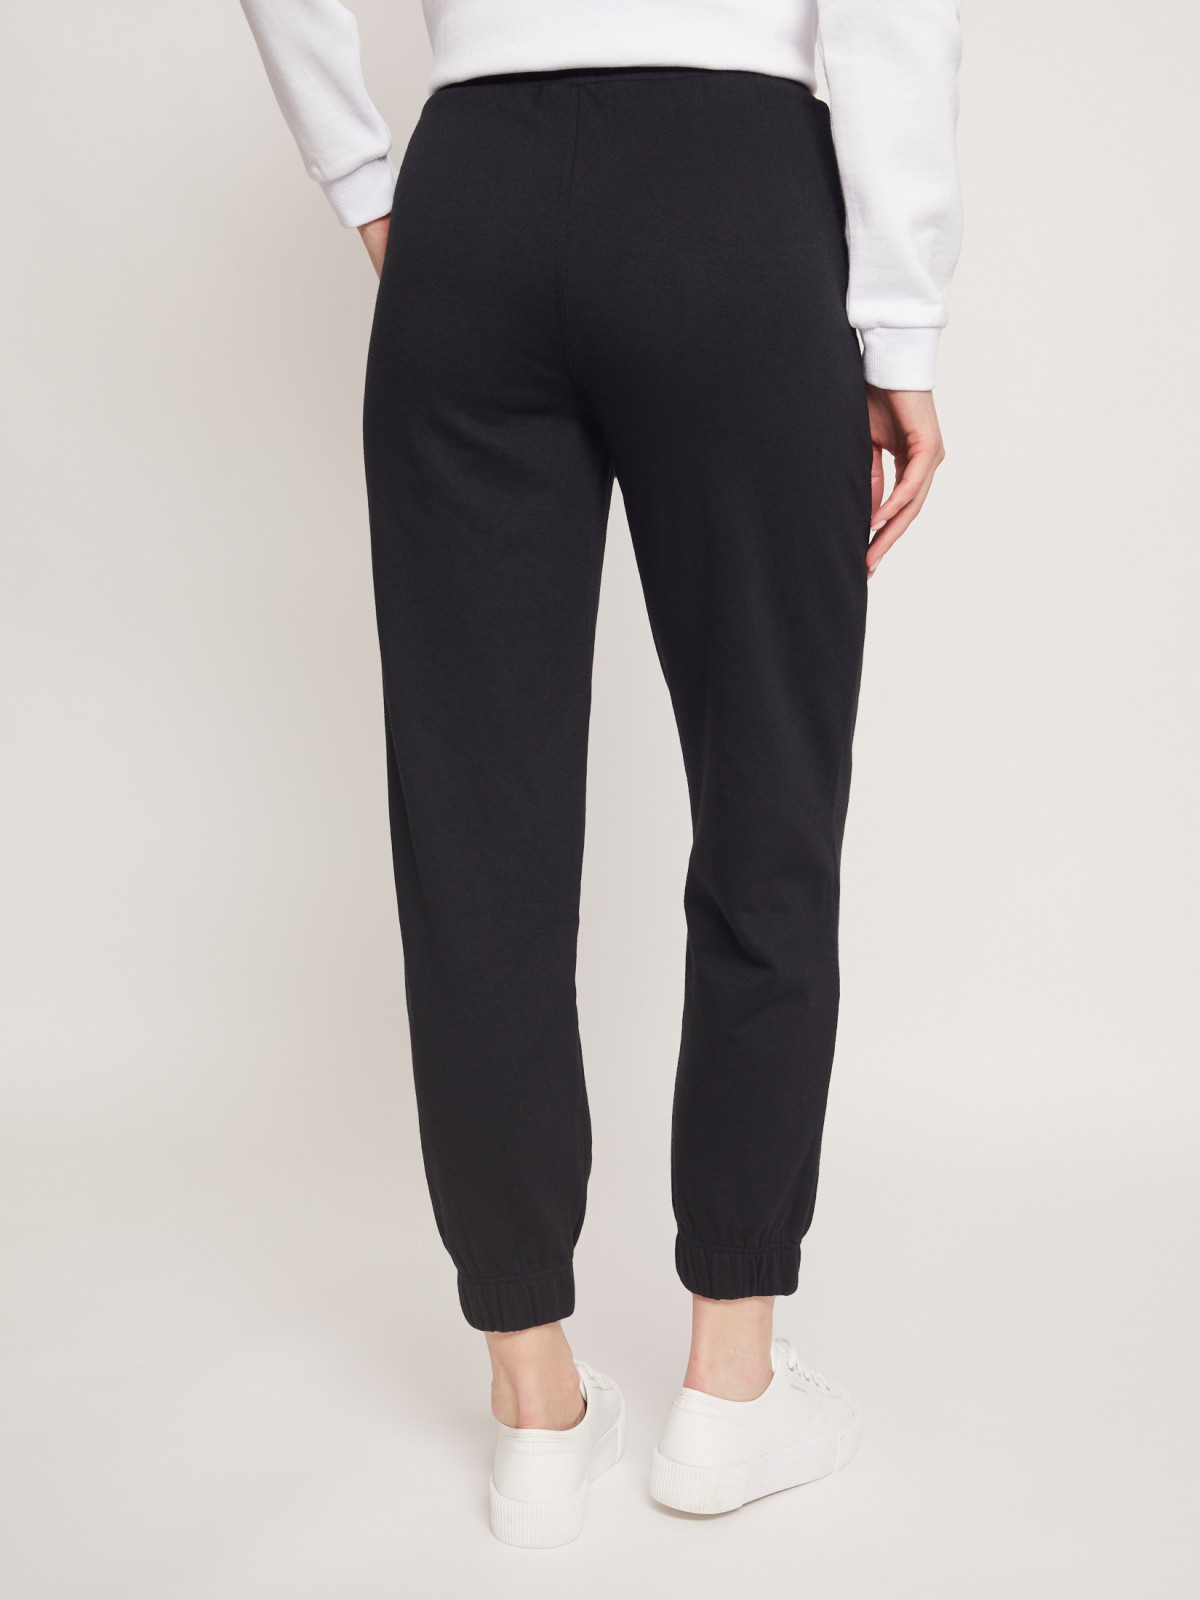 Трикотажные брюки-джоггеры zolla 22131732L121, цвет черный, размер XS - фото 6